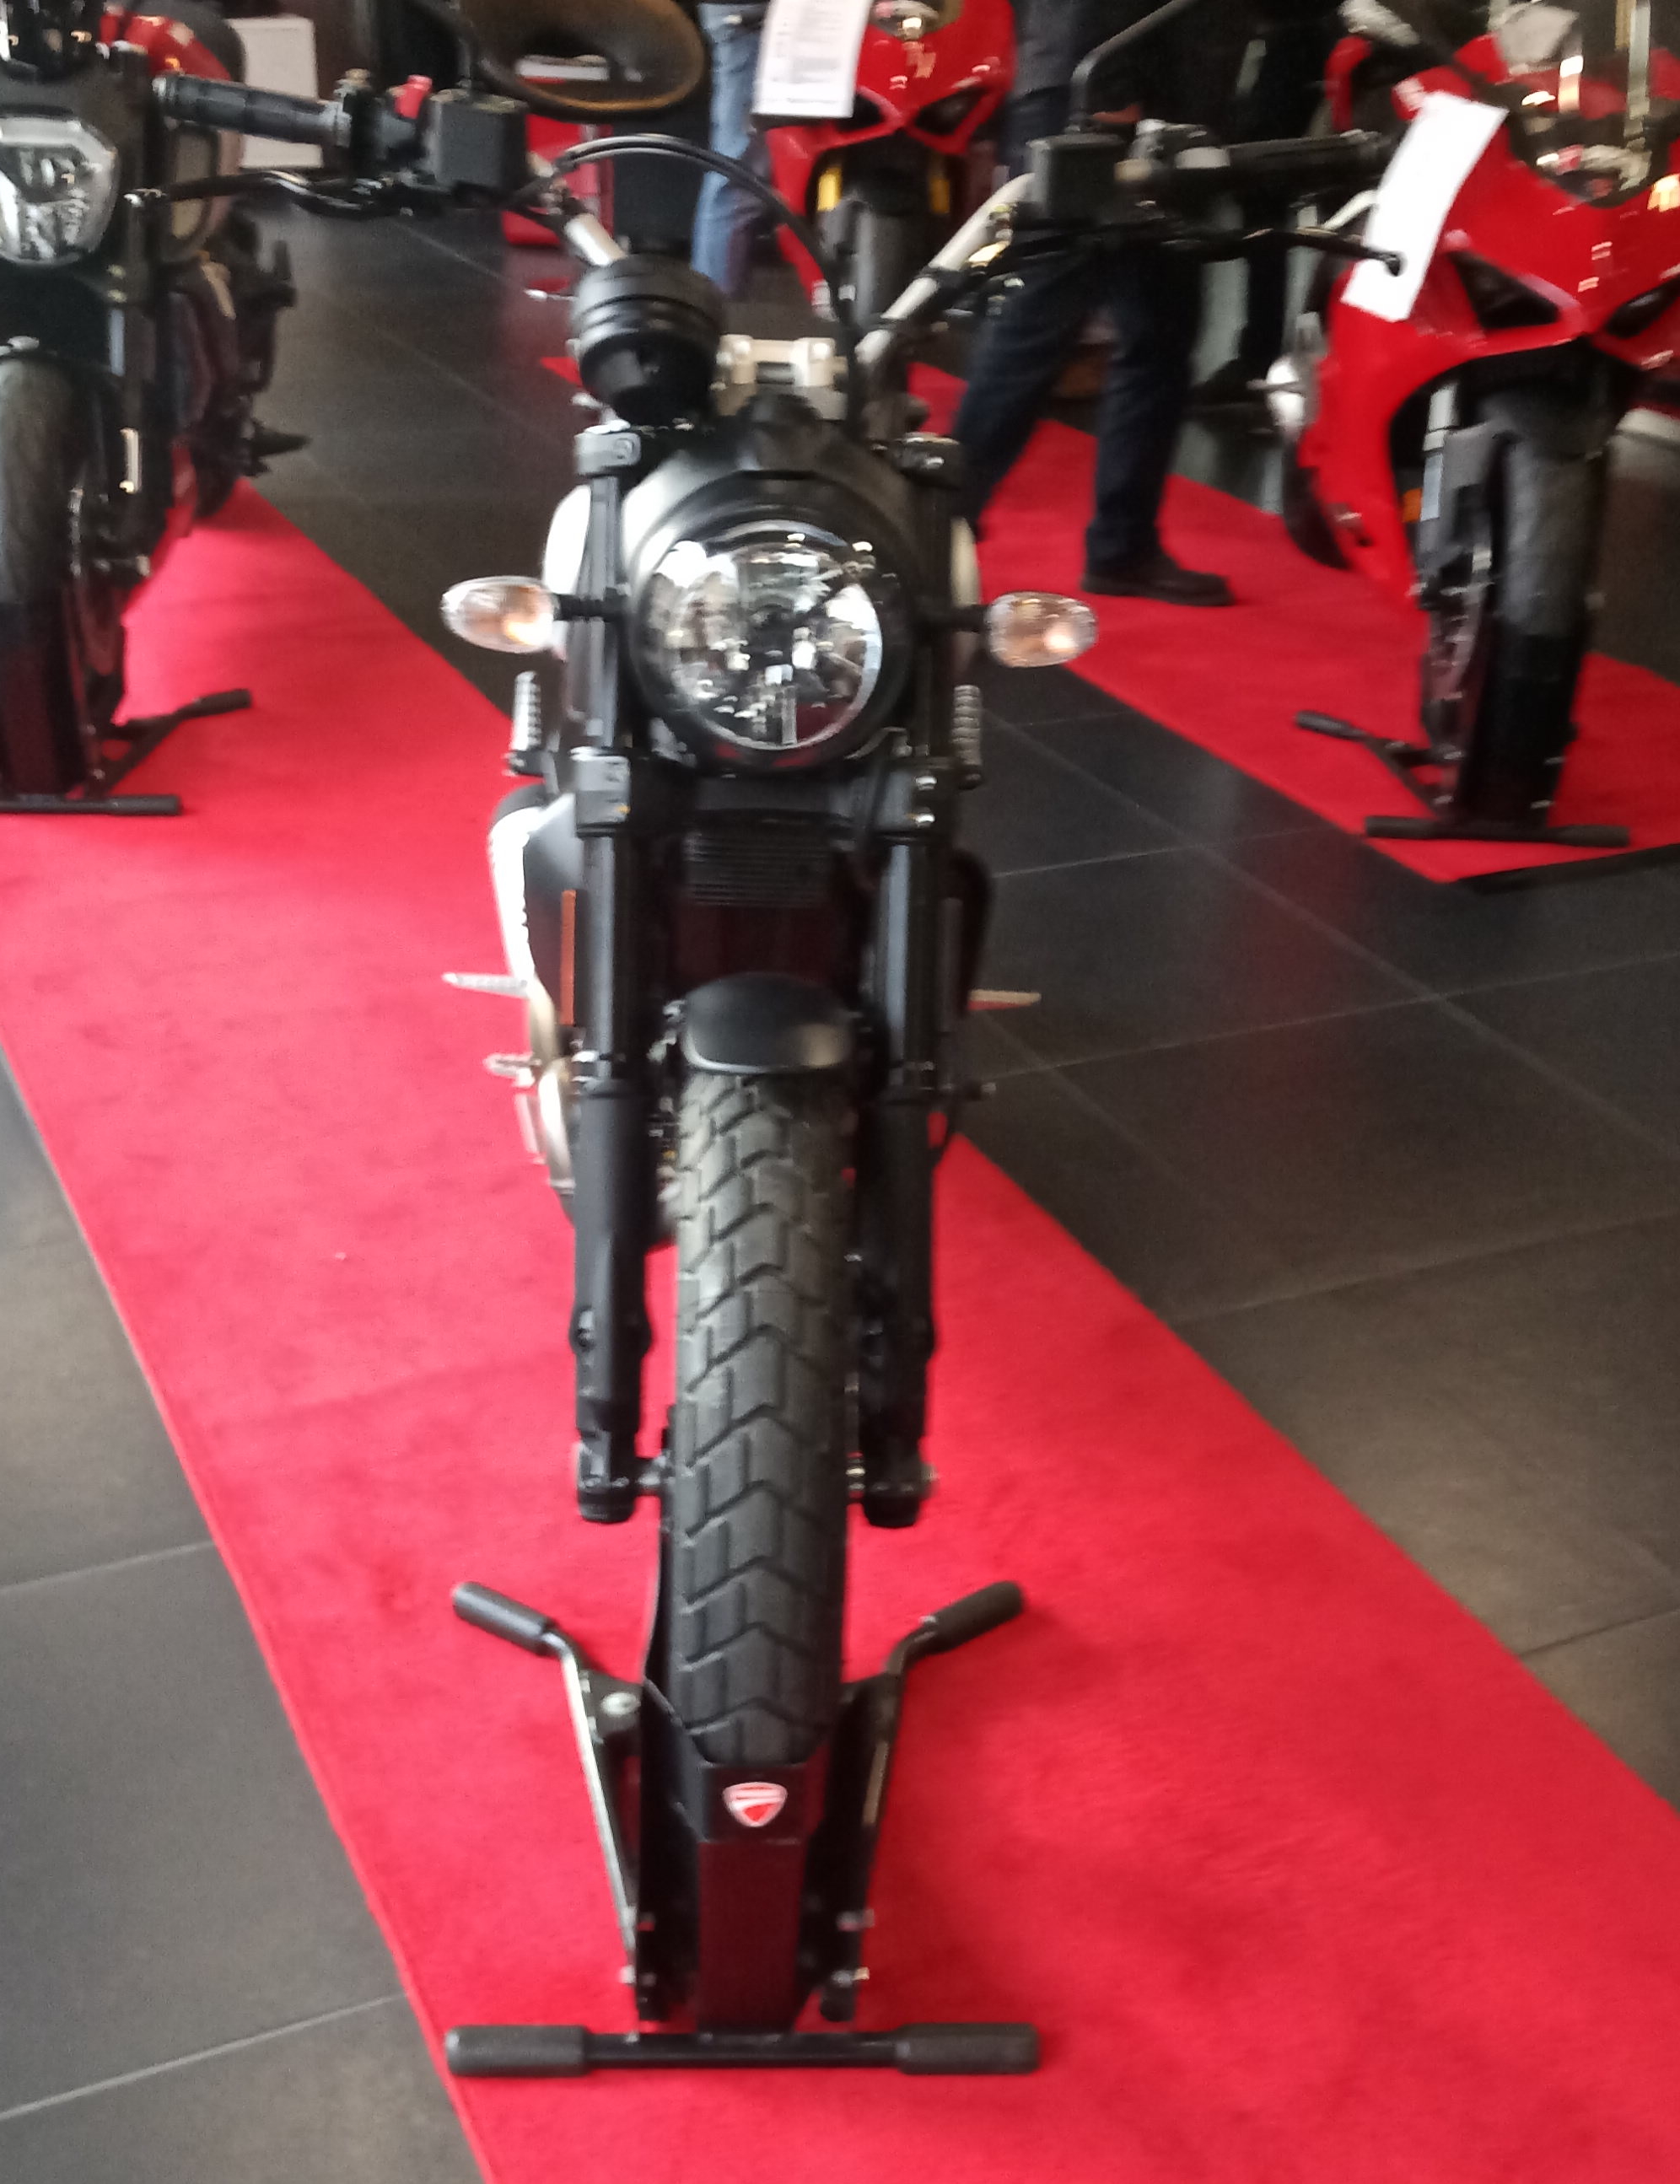 Ducati Scrambler Icon Dark